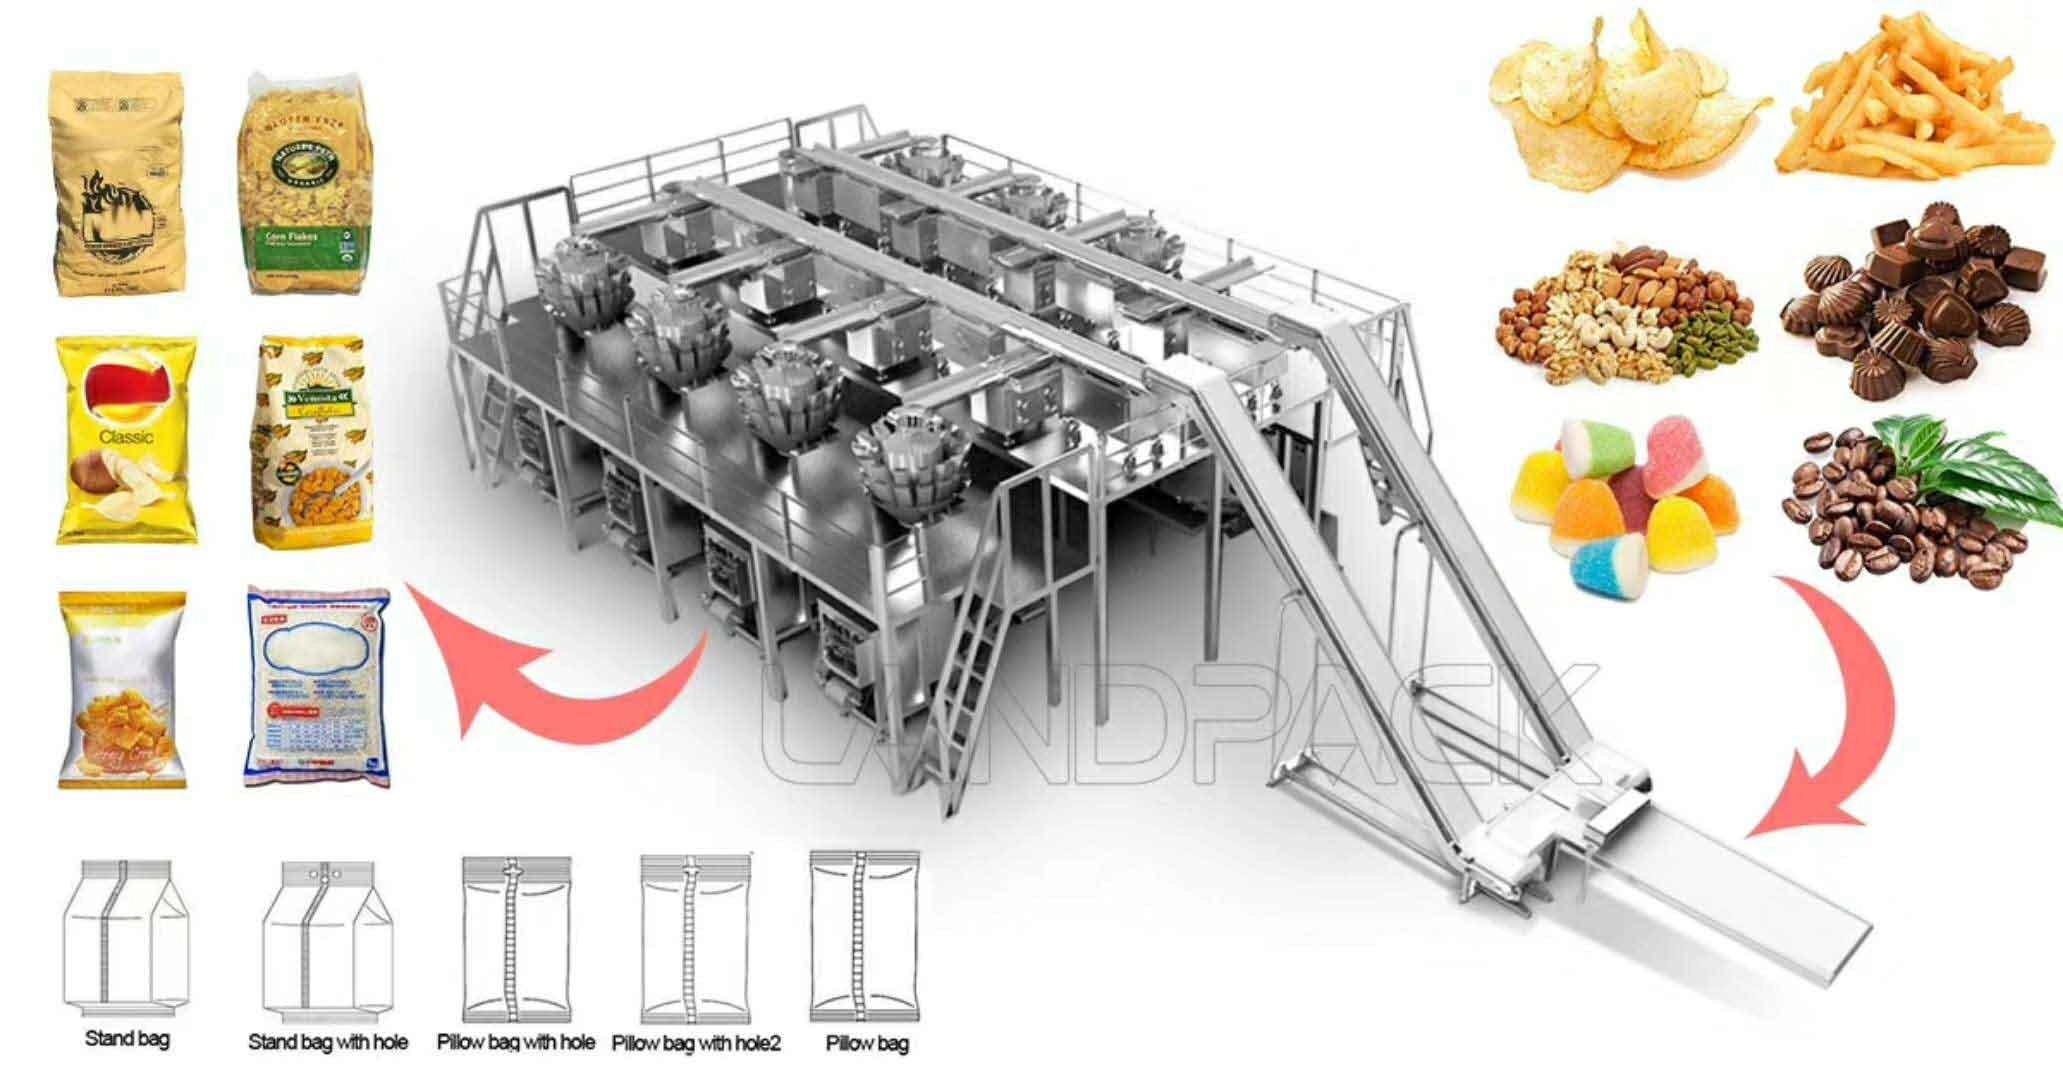 Machine de conditionnement alimentaire soufflée de maïs soufflé à pesage automatique multifonction